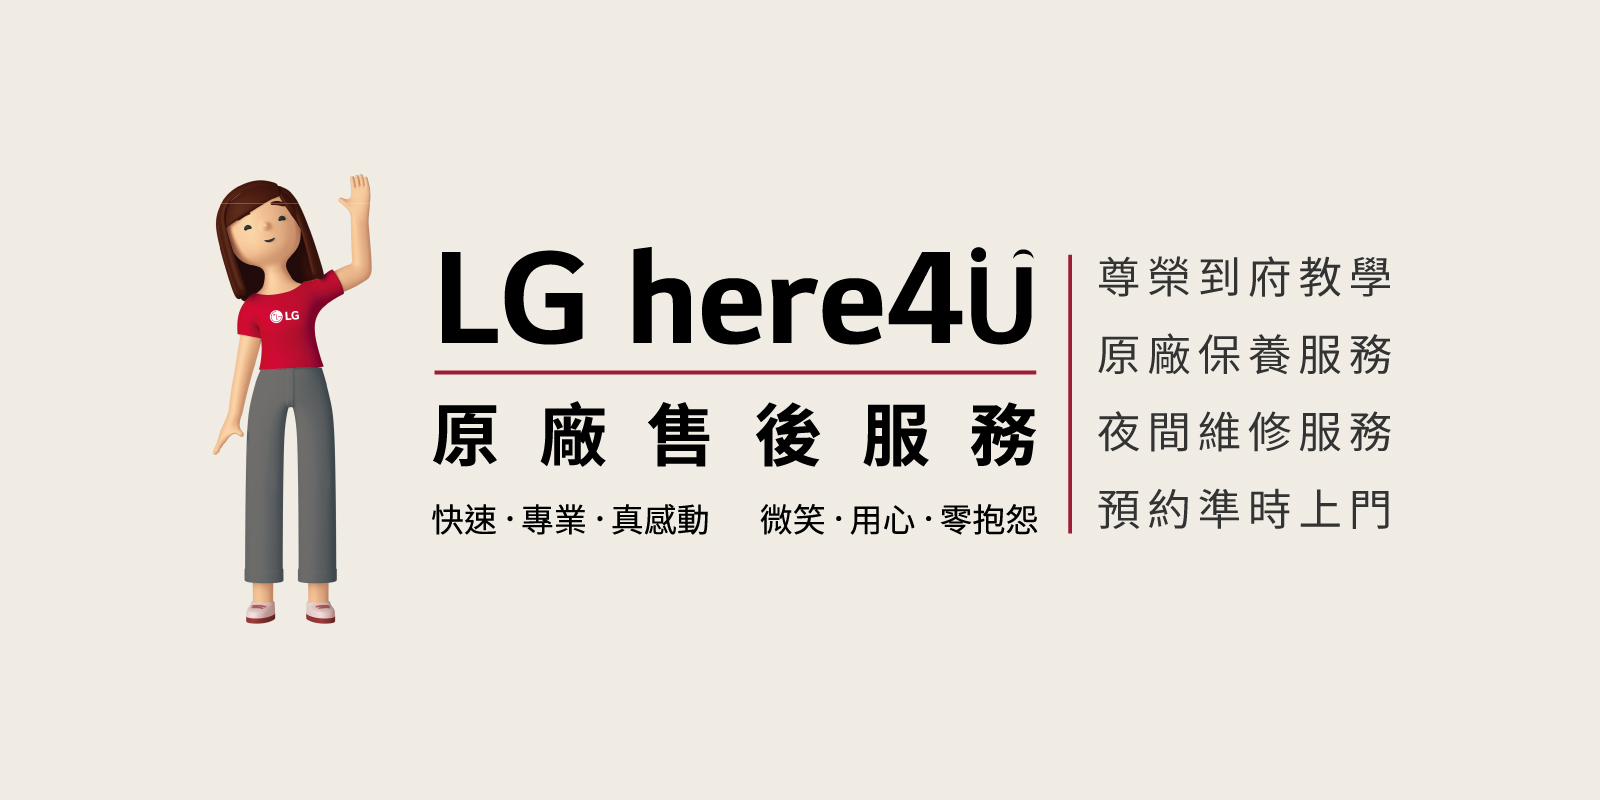 LG 原廠售後四大服務 Here4U 到府教學、保養服務、夜間維修，一條龍解決客戶問題 - 電腦王阿達